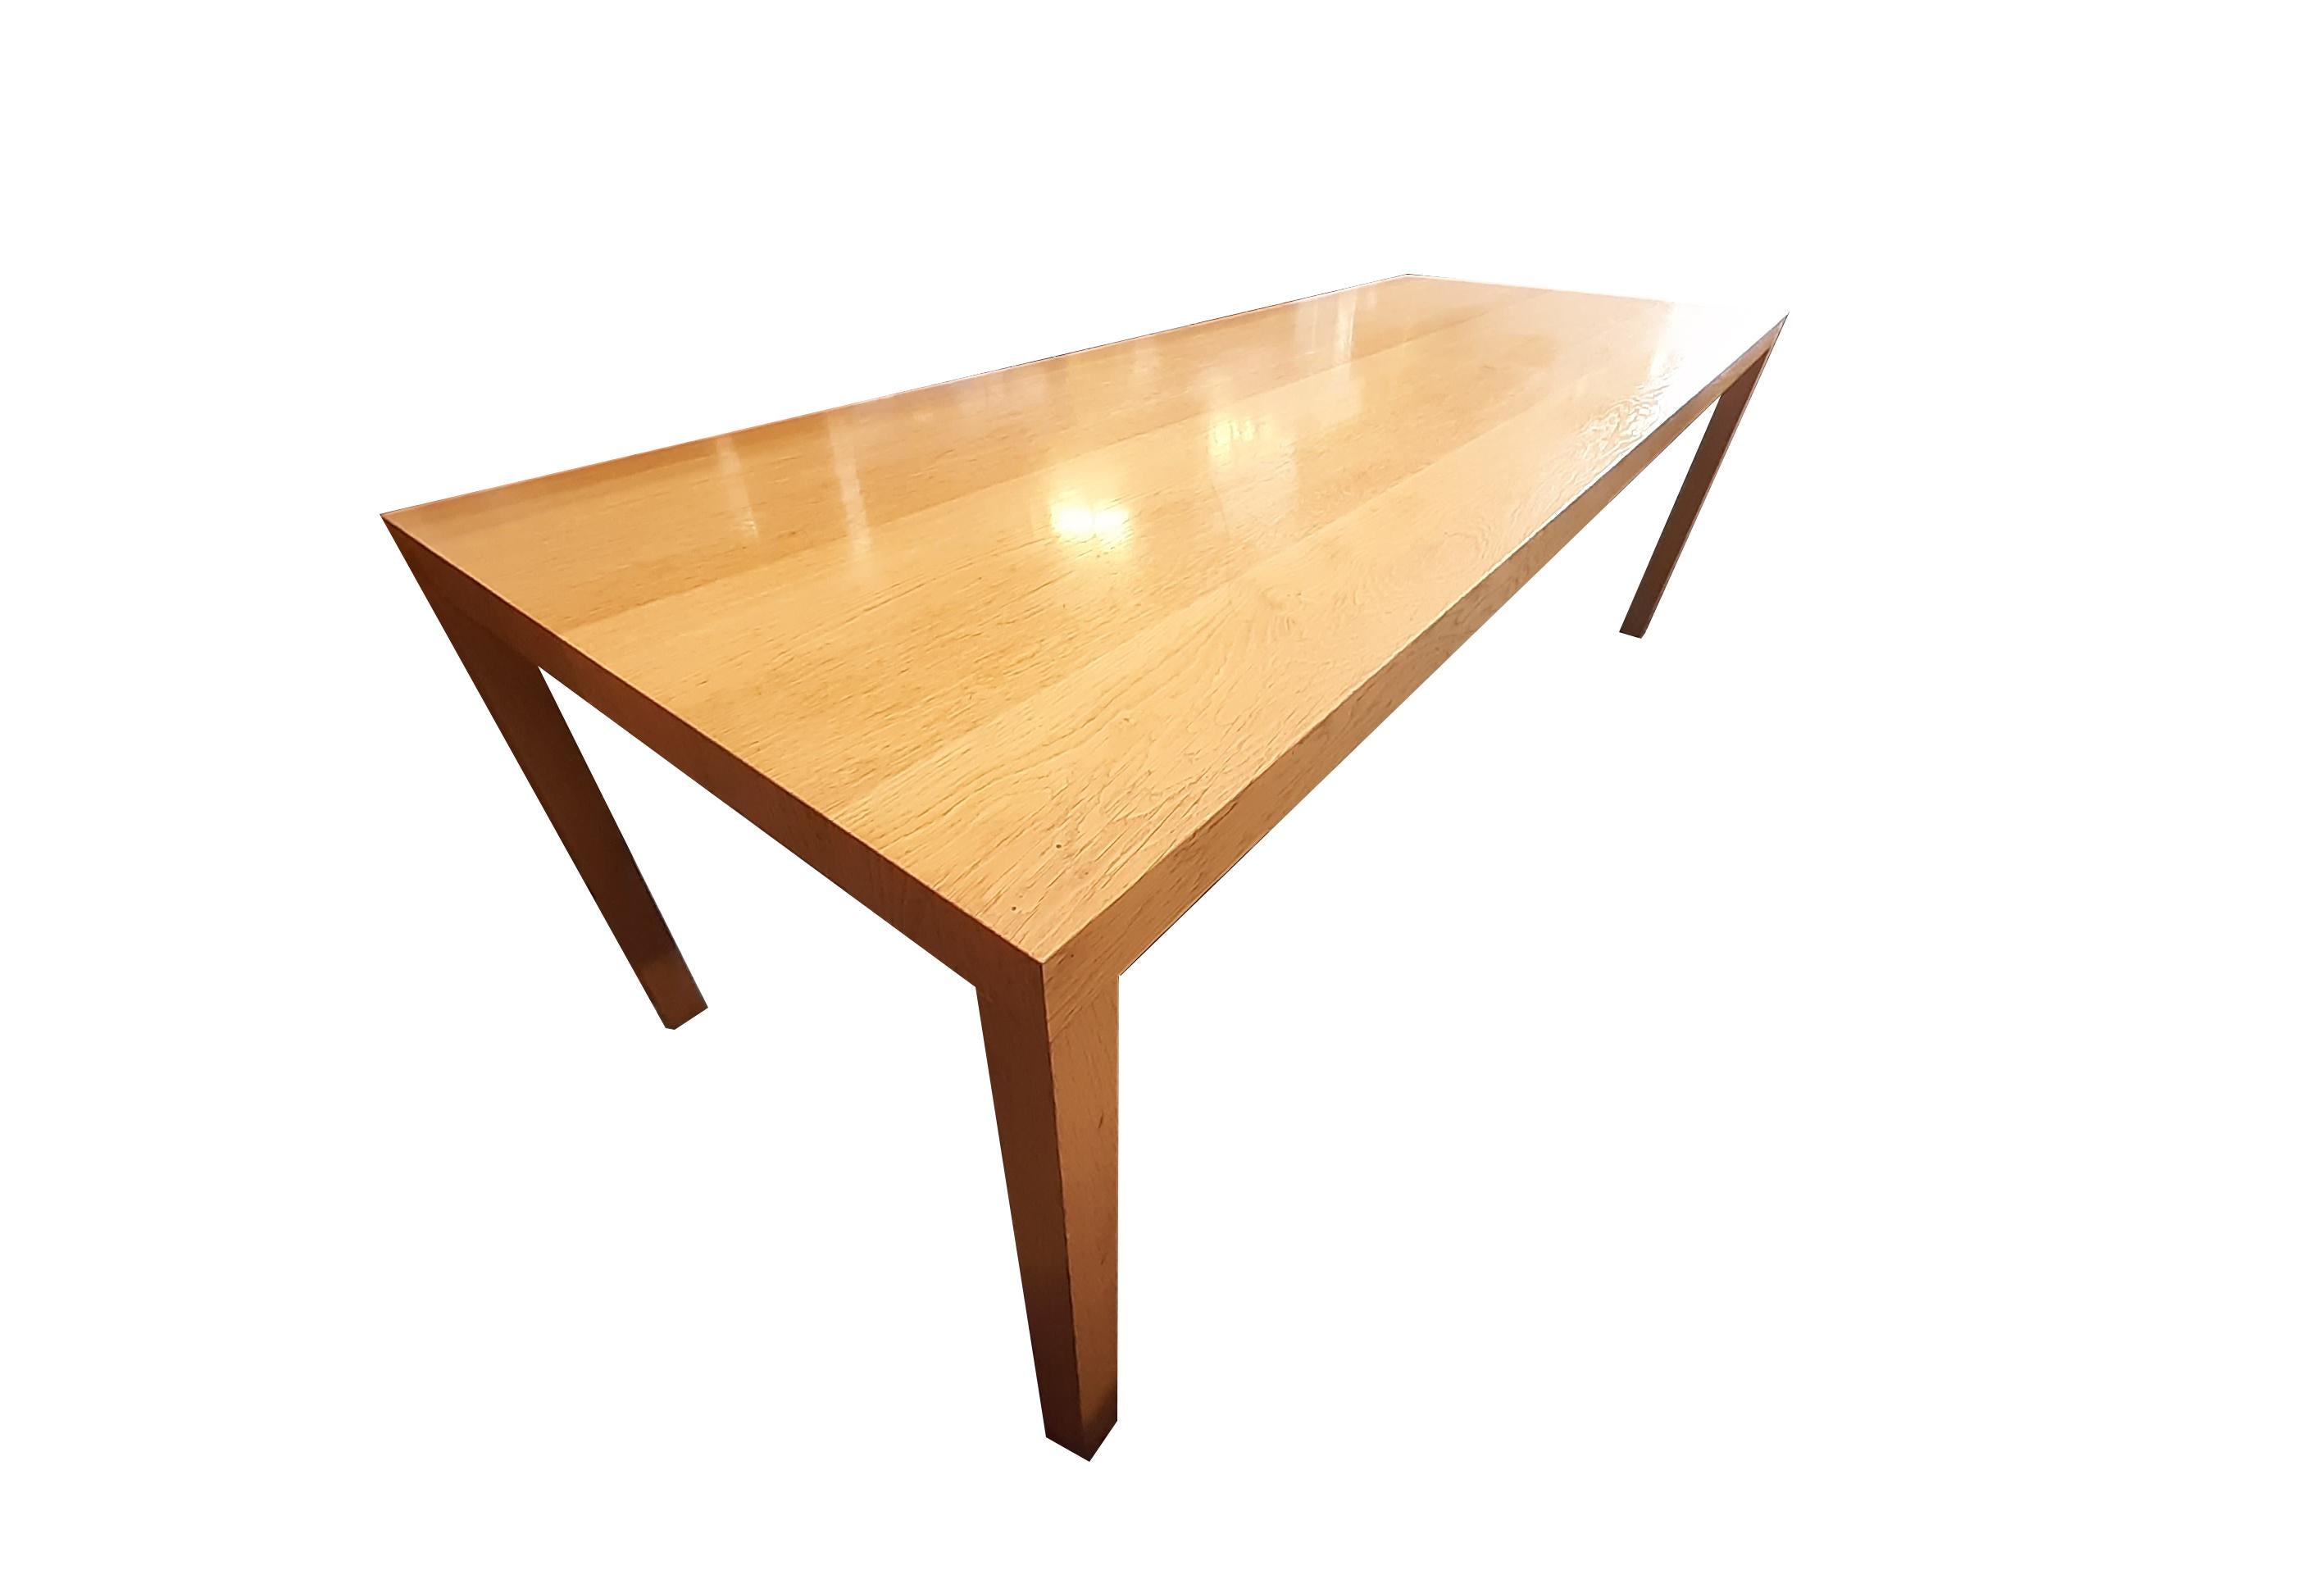 MAARTEN VAN SEVEREN T88W dining table von VITRA um 2005

Die Originalversion dieses Tisches wurde 1988 von Maarten van Severen in seinem Atelier hergestellt.

In Folge wurde der Tisch von Top-Mouton produziert. Diese Tisch stammt wohl aus dem Jahr